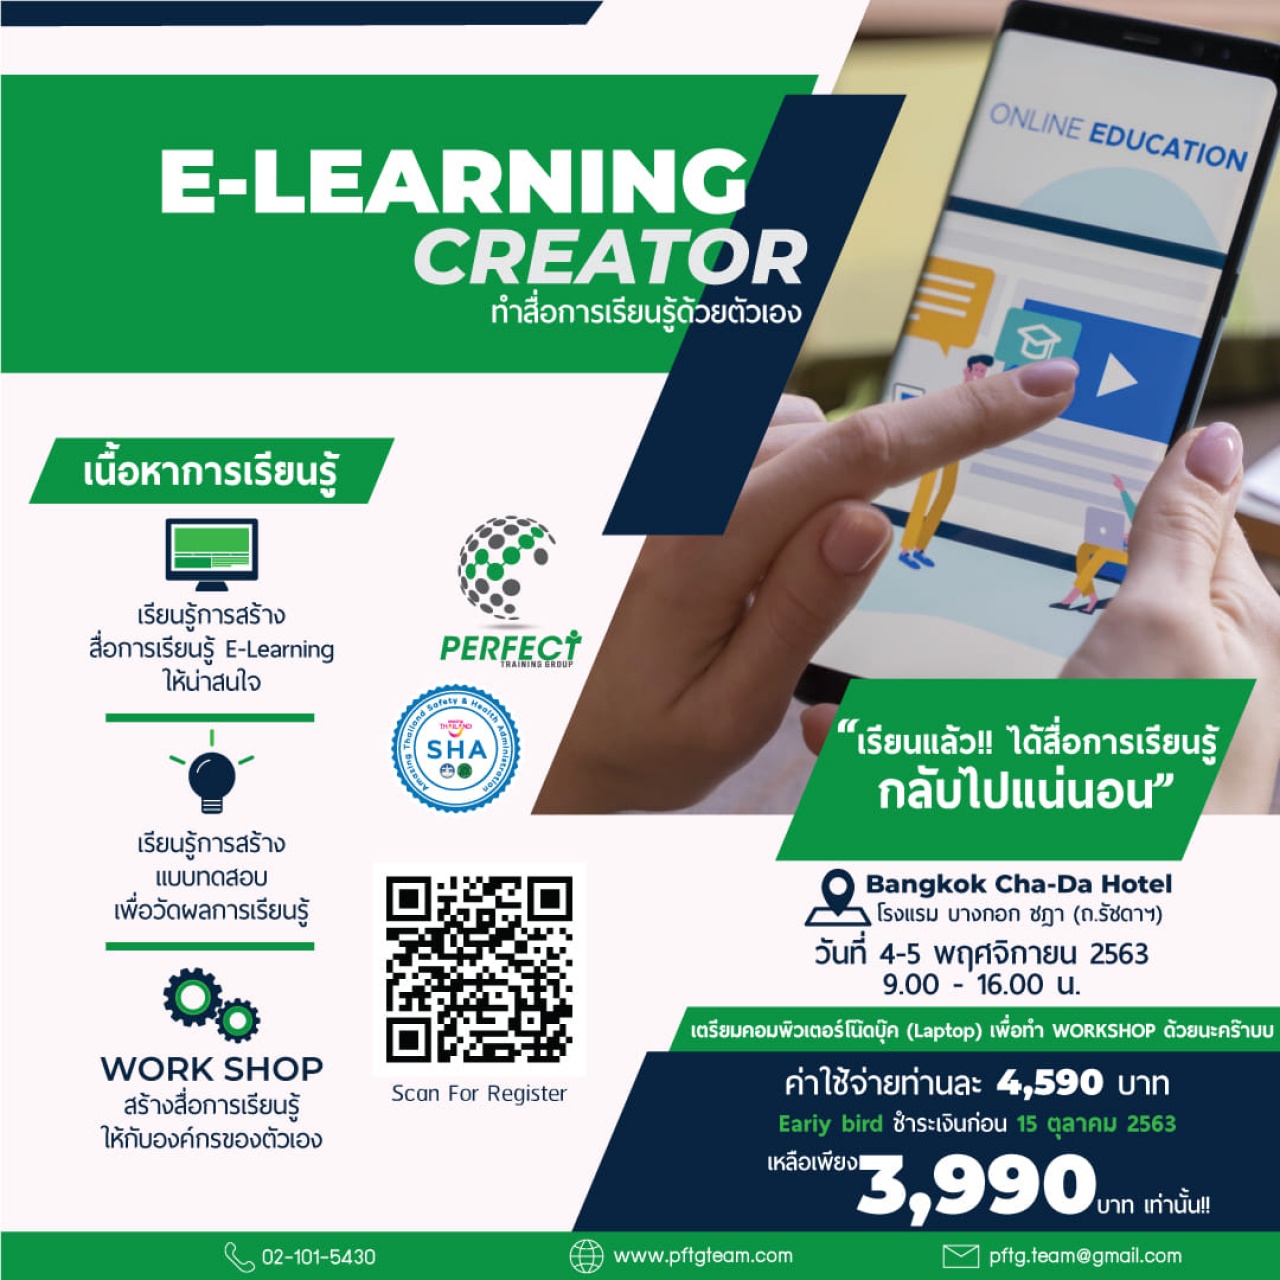 E-Learning Creator ทำสื่อการเรียนรู้ด้วยตัวเอง